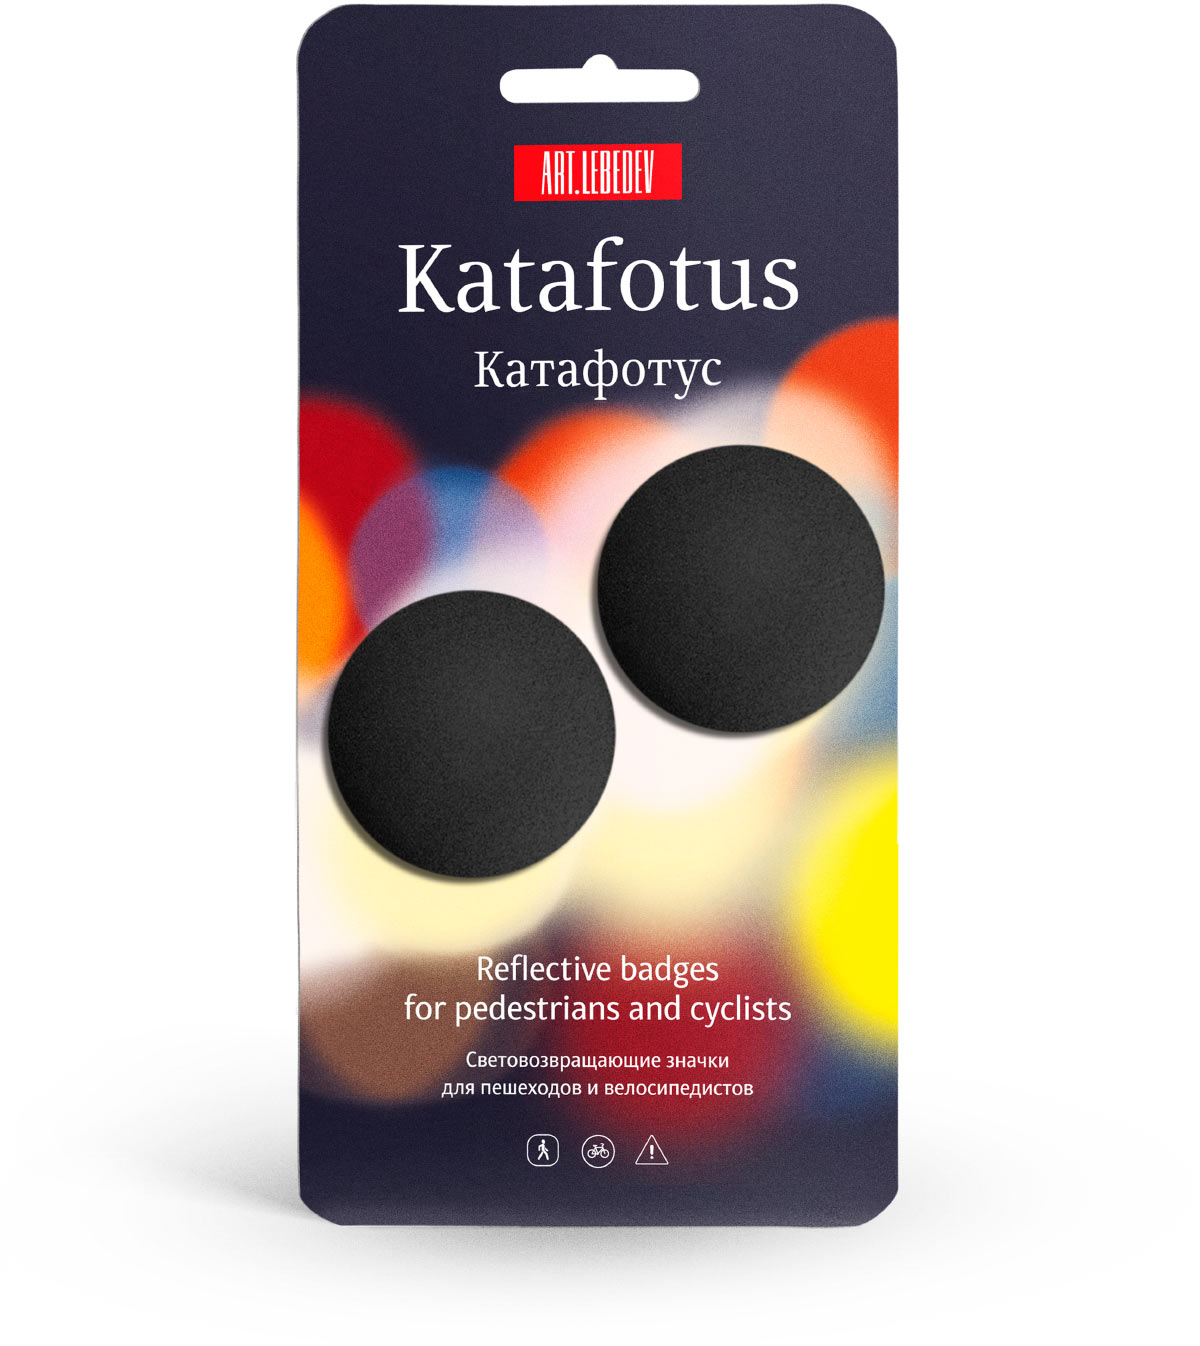 katafotus package 03